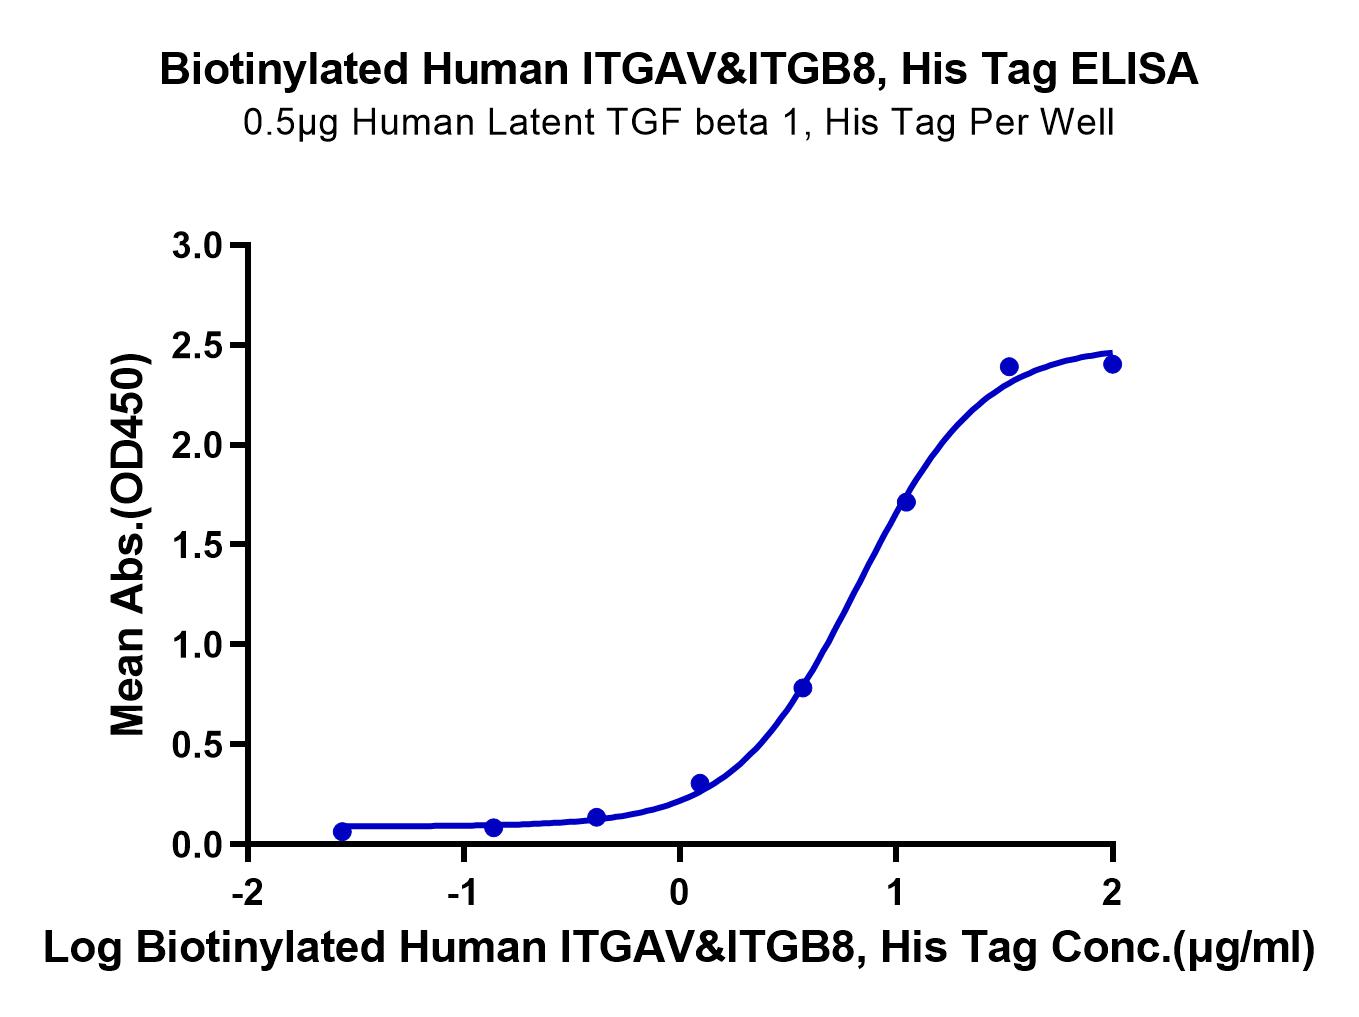 Biotinylated Human Integrin alpha V beta 8 (ITGAV&ITGB8) Heterodimer Protein (LTP10089)